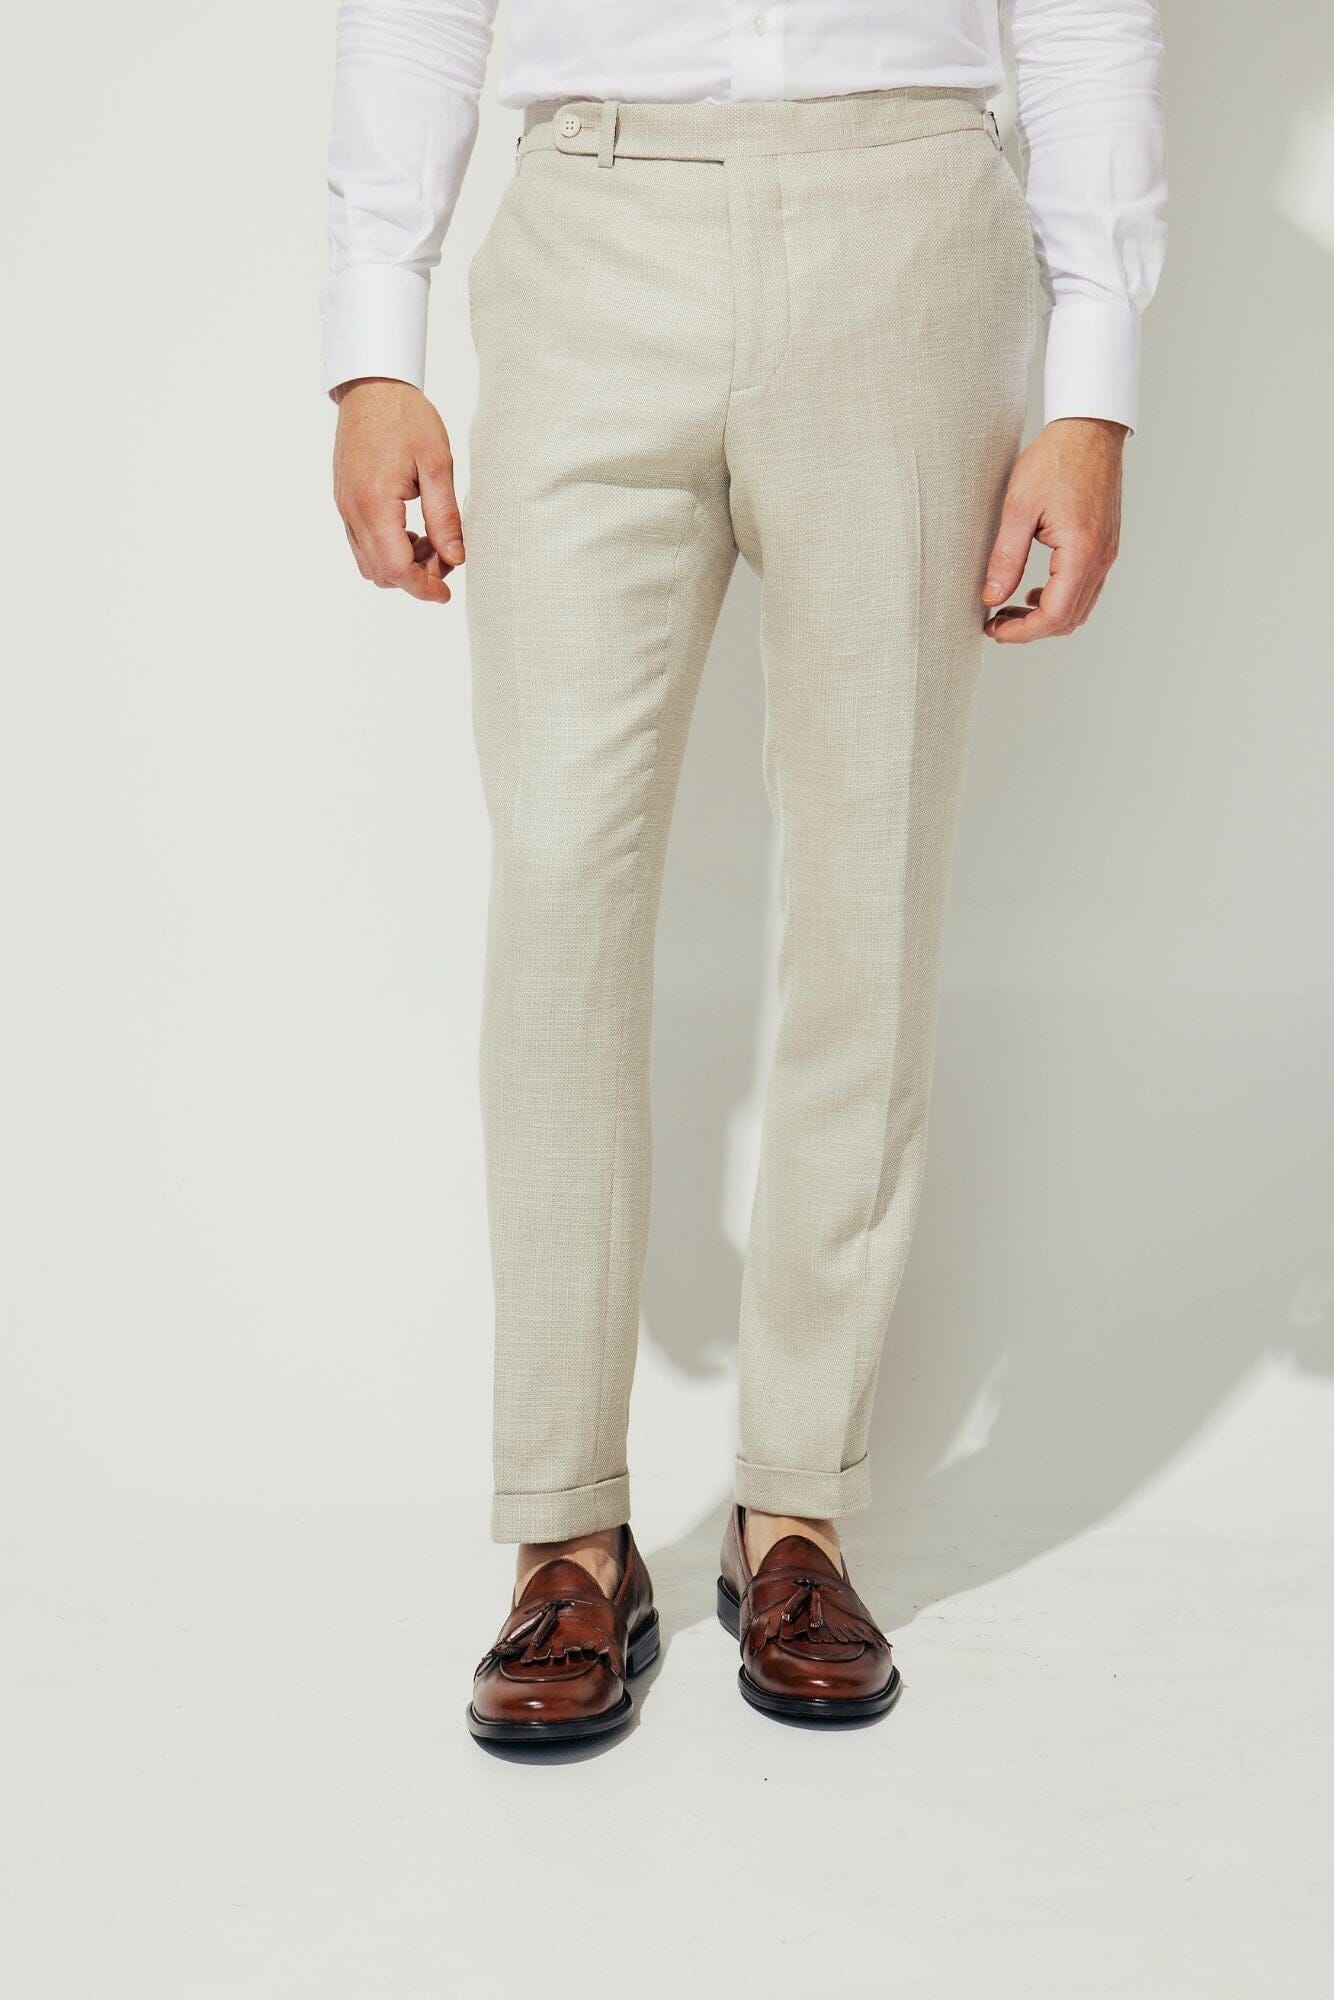 Shop Mens Linen Pant | Mens Bottom Wear - White | Ramraj Cotton